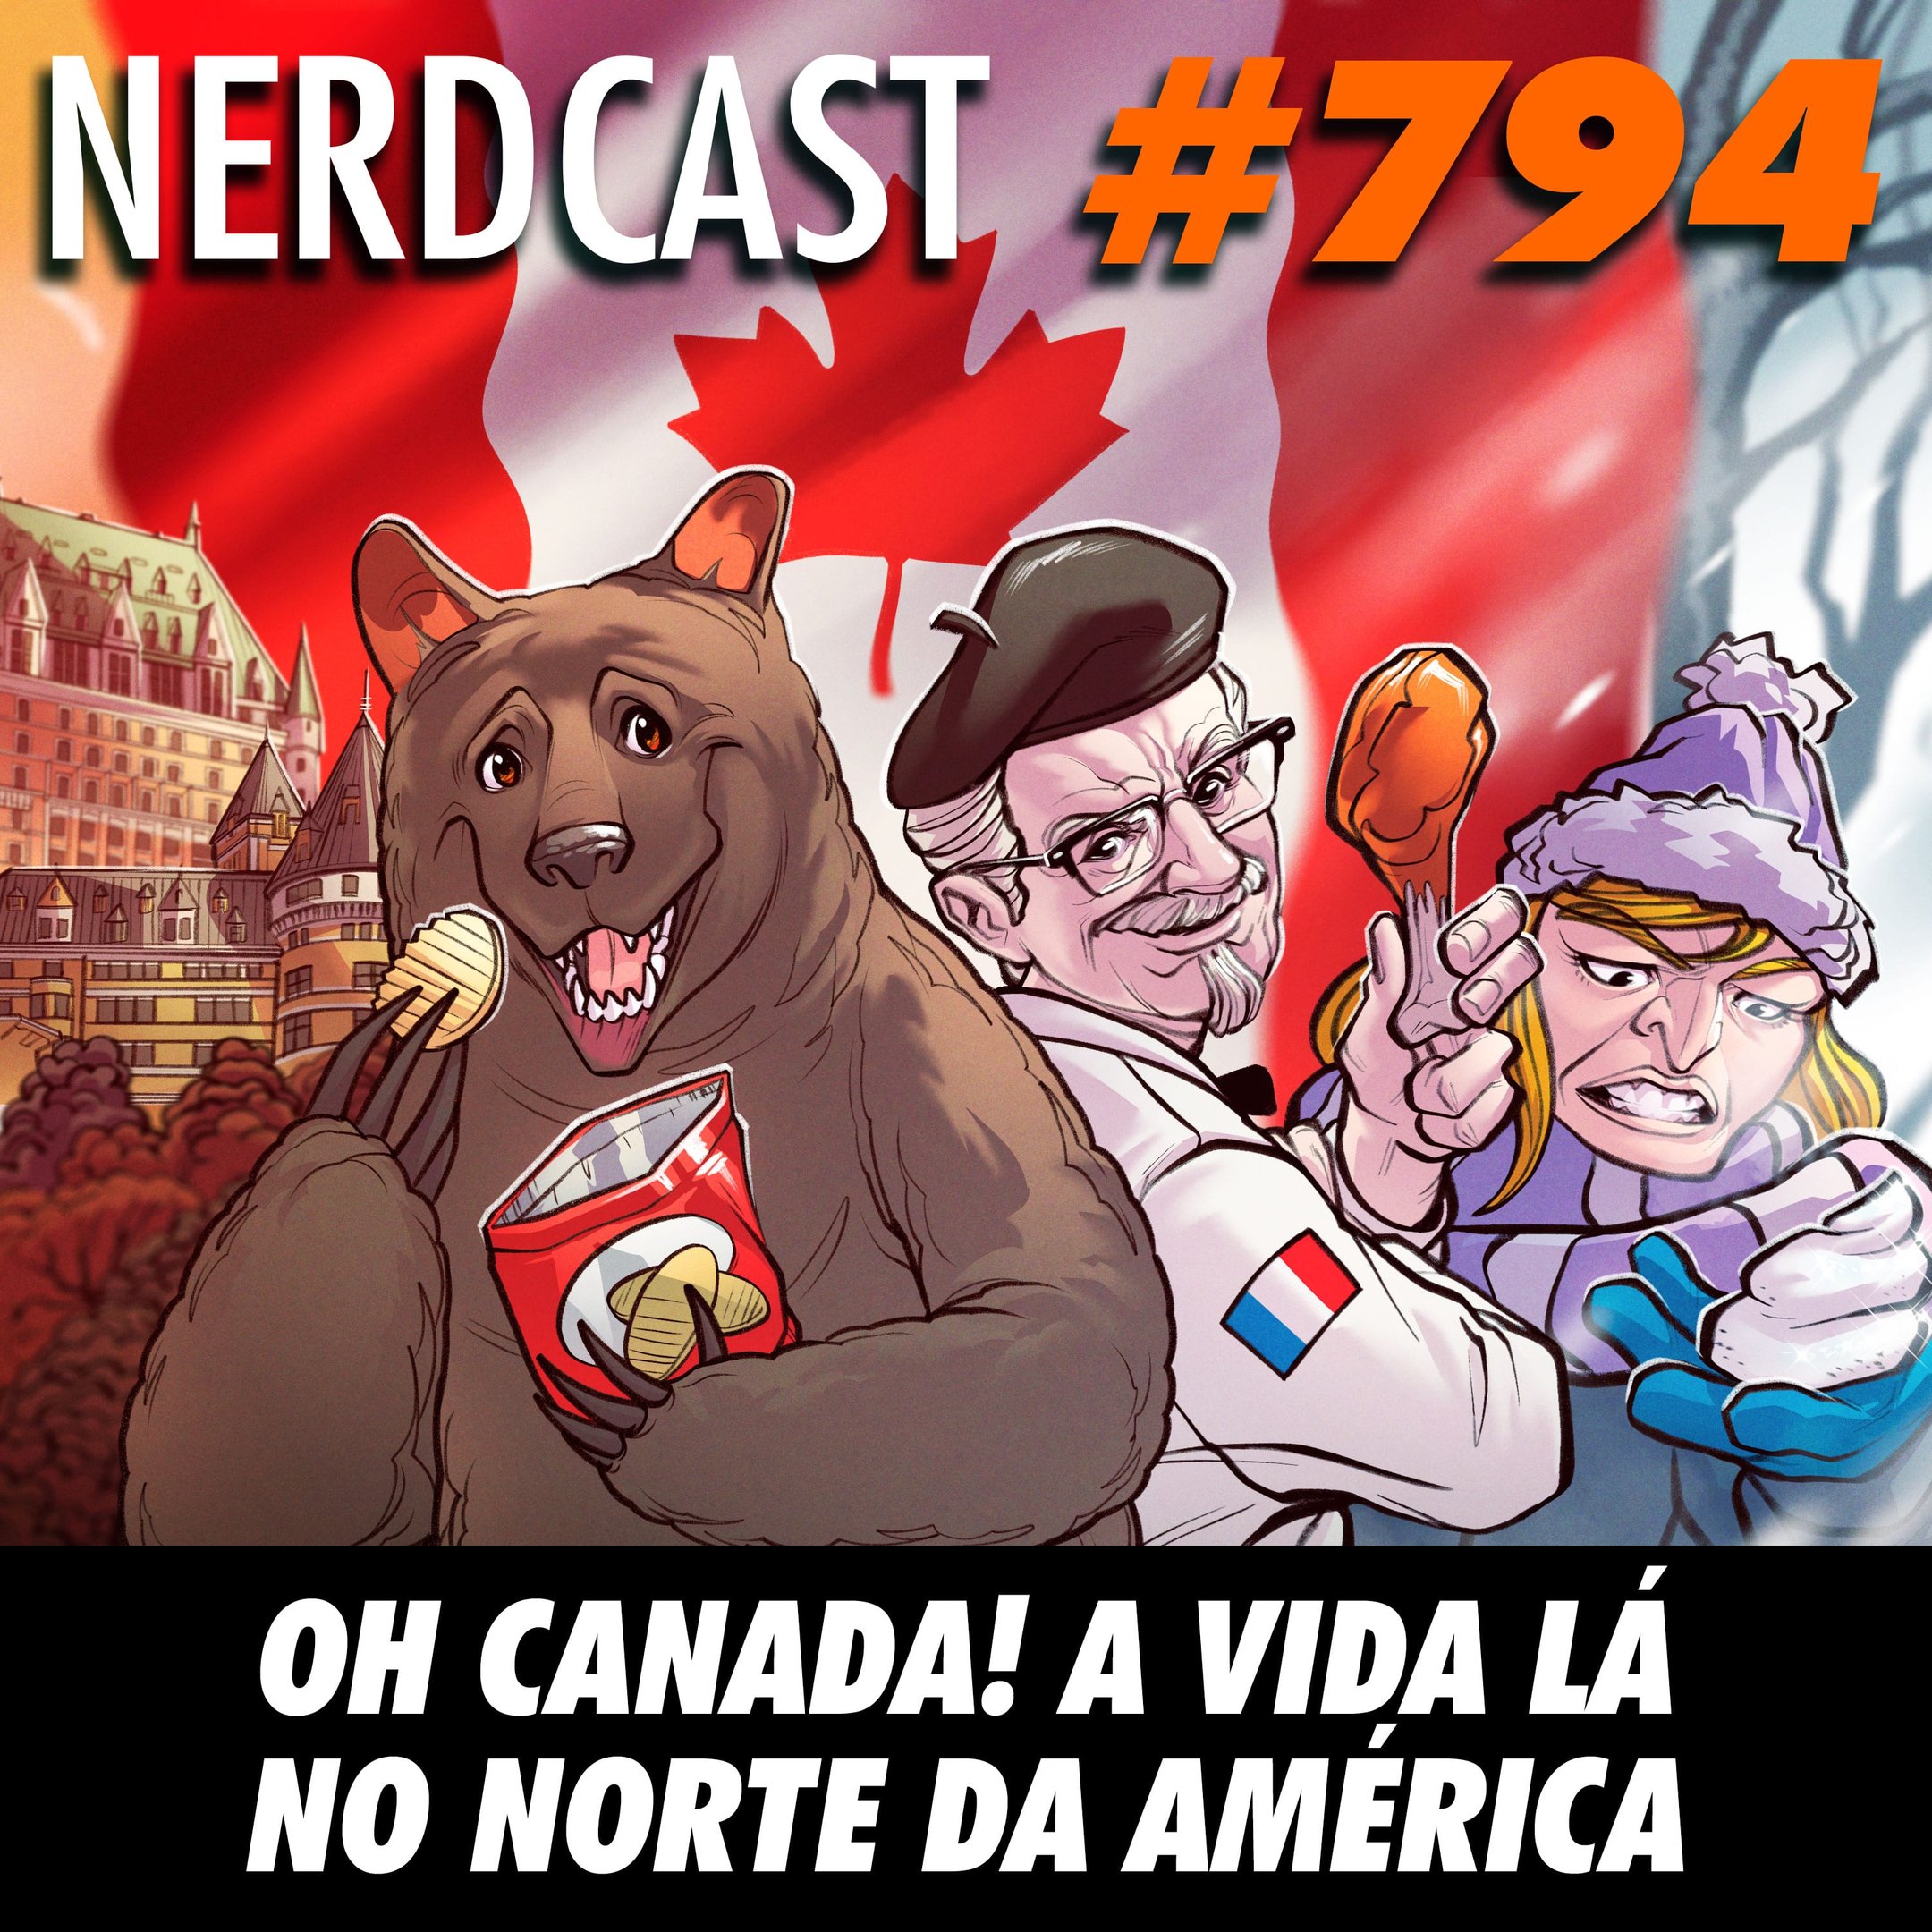 NerdCast 794 - Oh Canada! A vida lá no norte da América